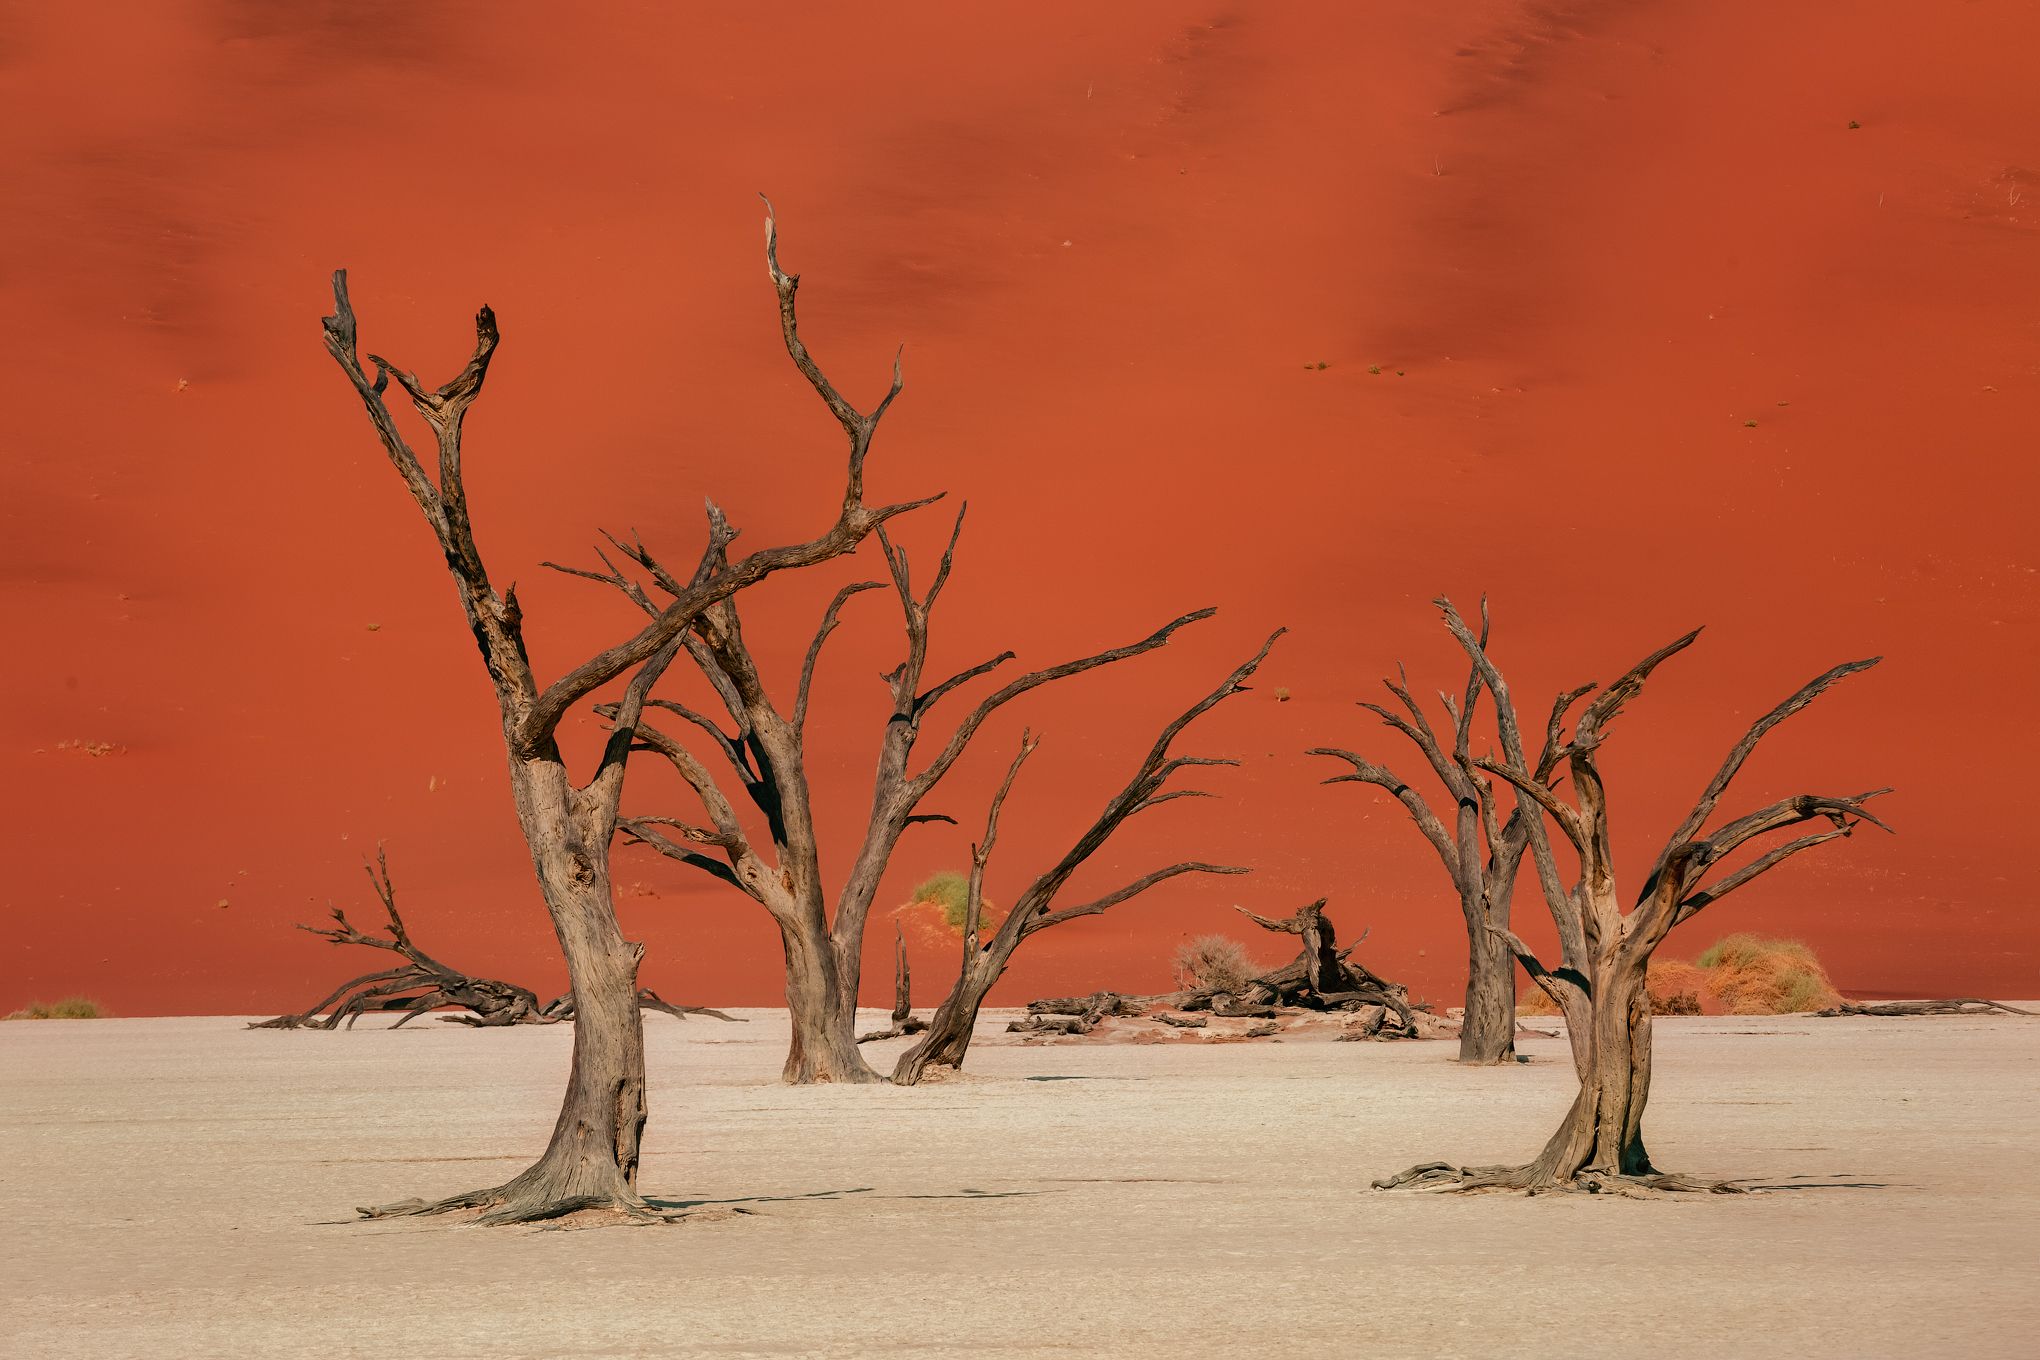 #Африка #Намибия #Мертвые деревья #Дедвлей #дюны #песок #africa #namibia #sand #dunes #Deadvlei #акация, Наталия Деркач